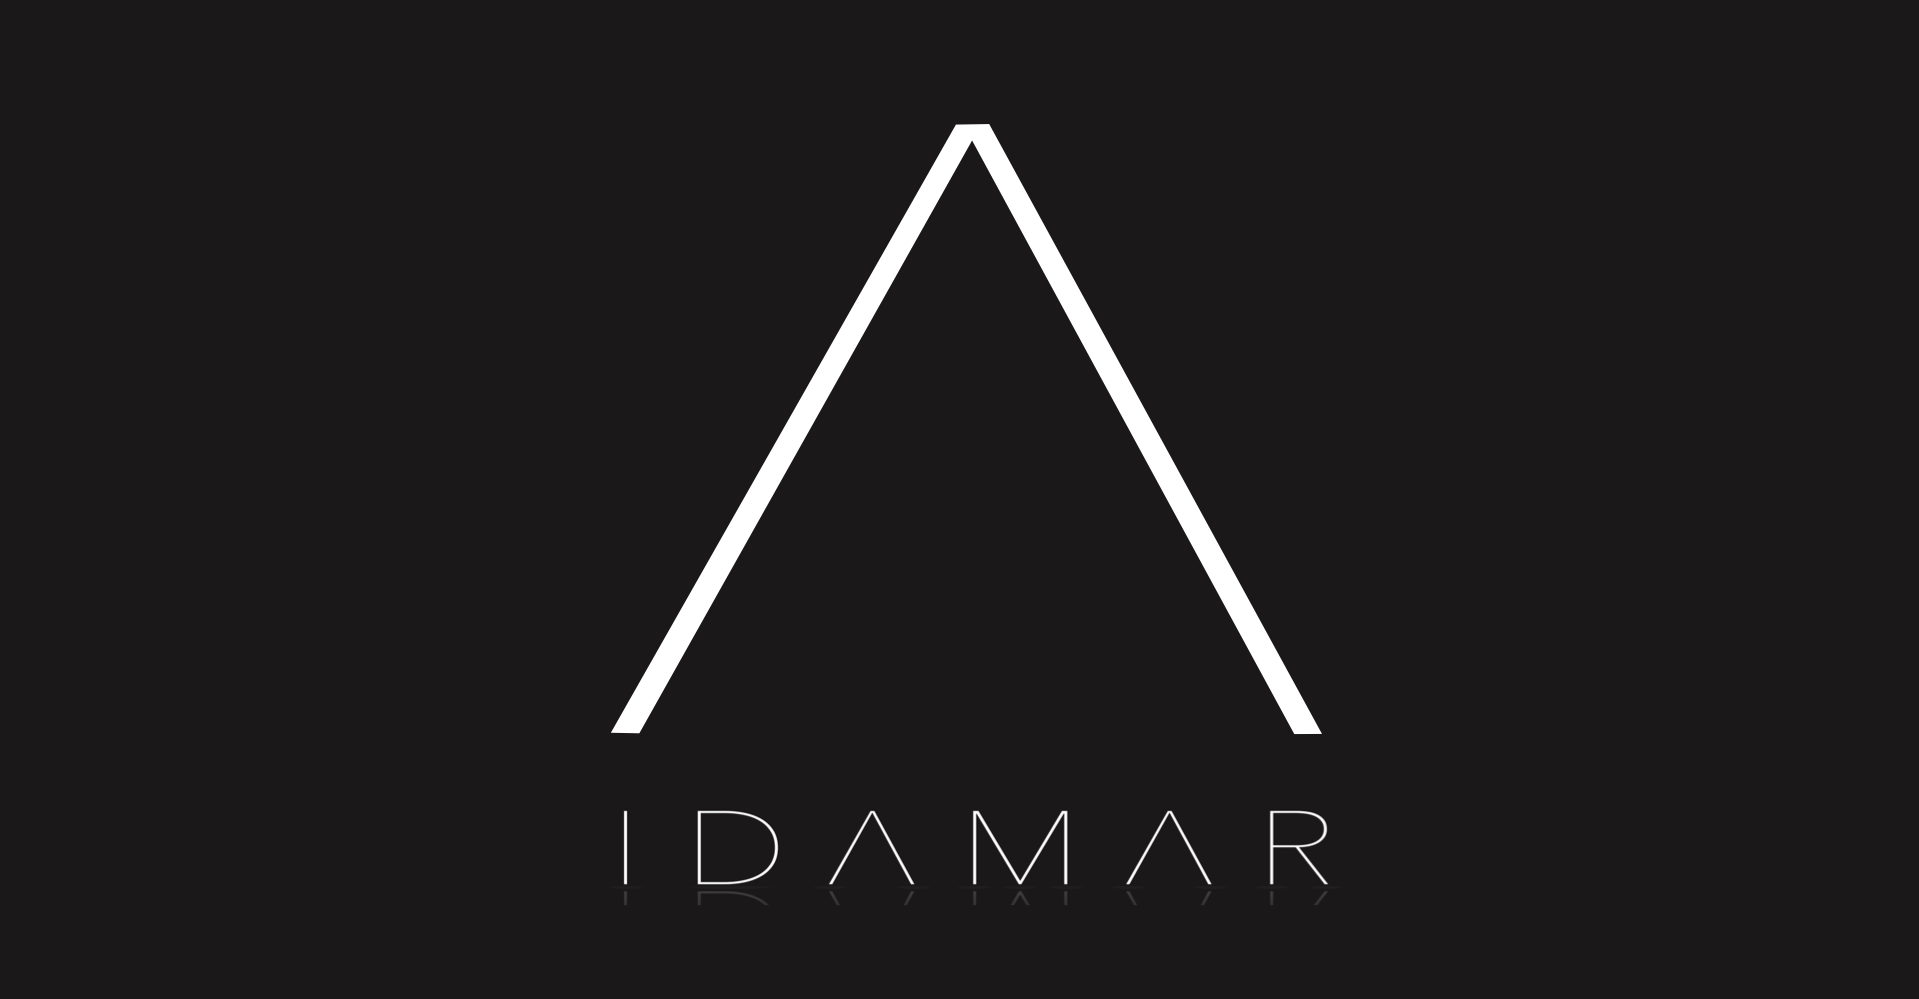 IDAMAR News